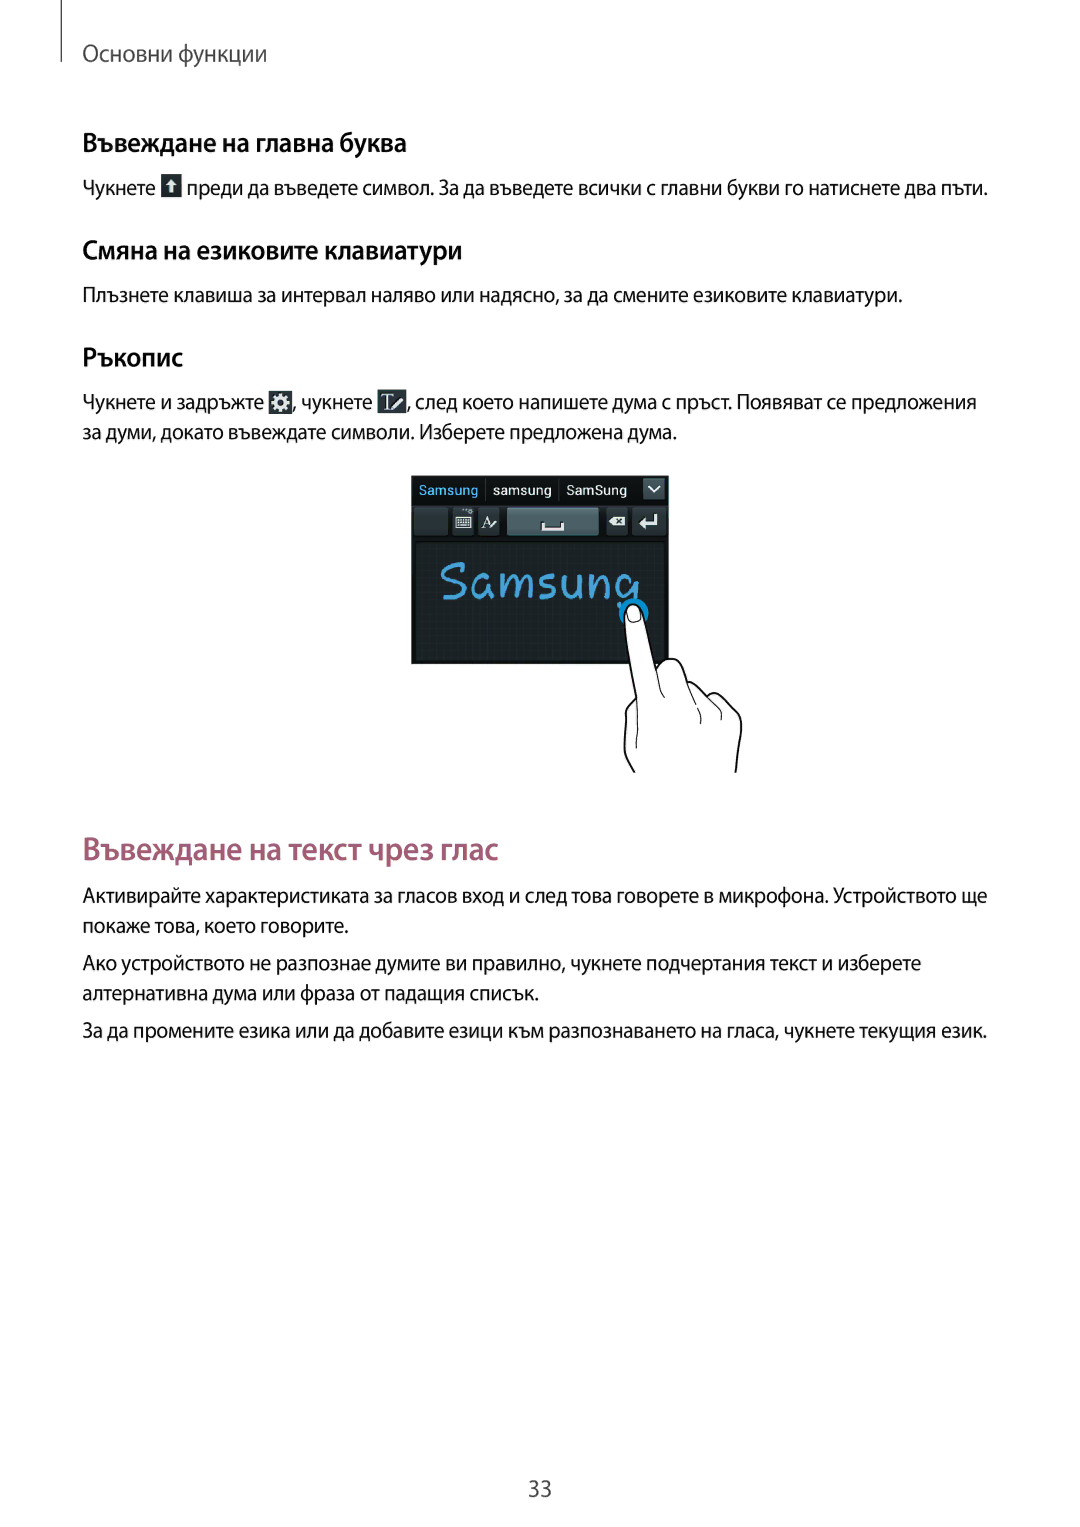 Samsung GT-S7710TAABGL Въвеждане на текст чрез глас, Въвеждане на главна буква, Смяна на езиковите клавиатури, Ръкопис 